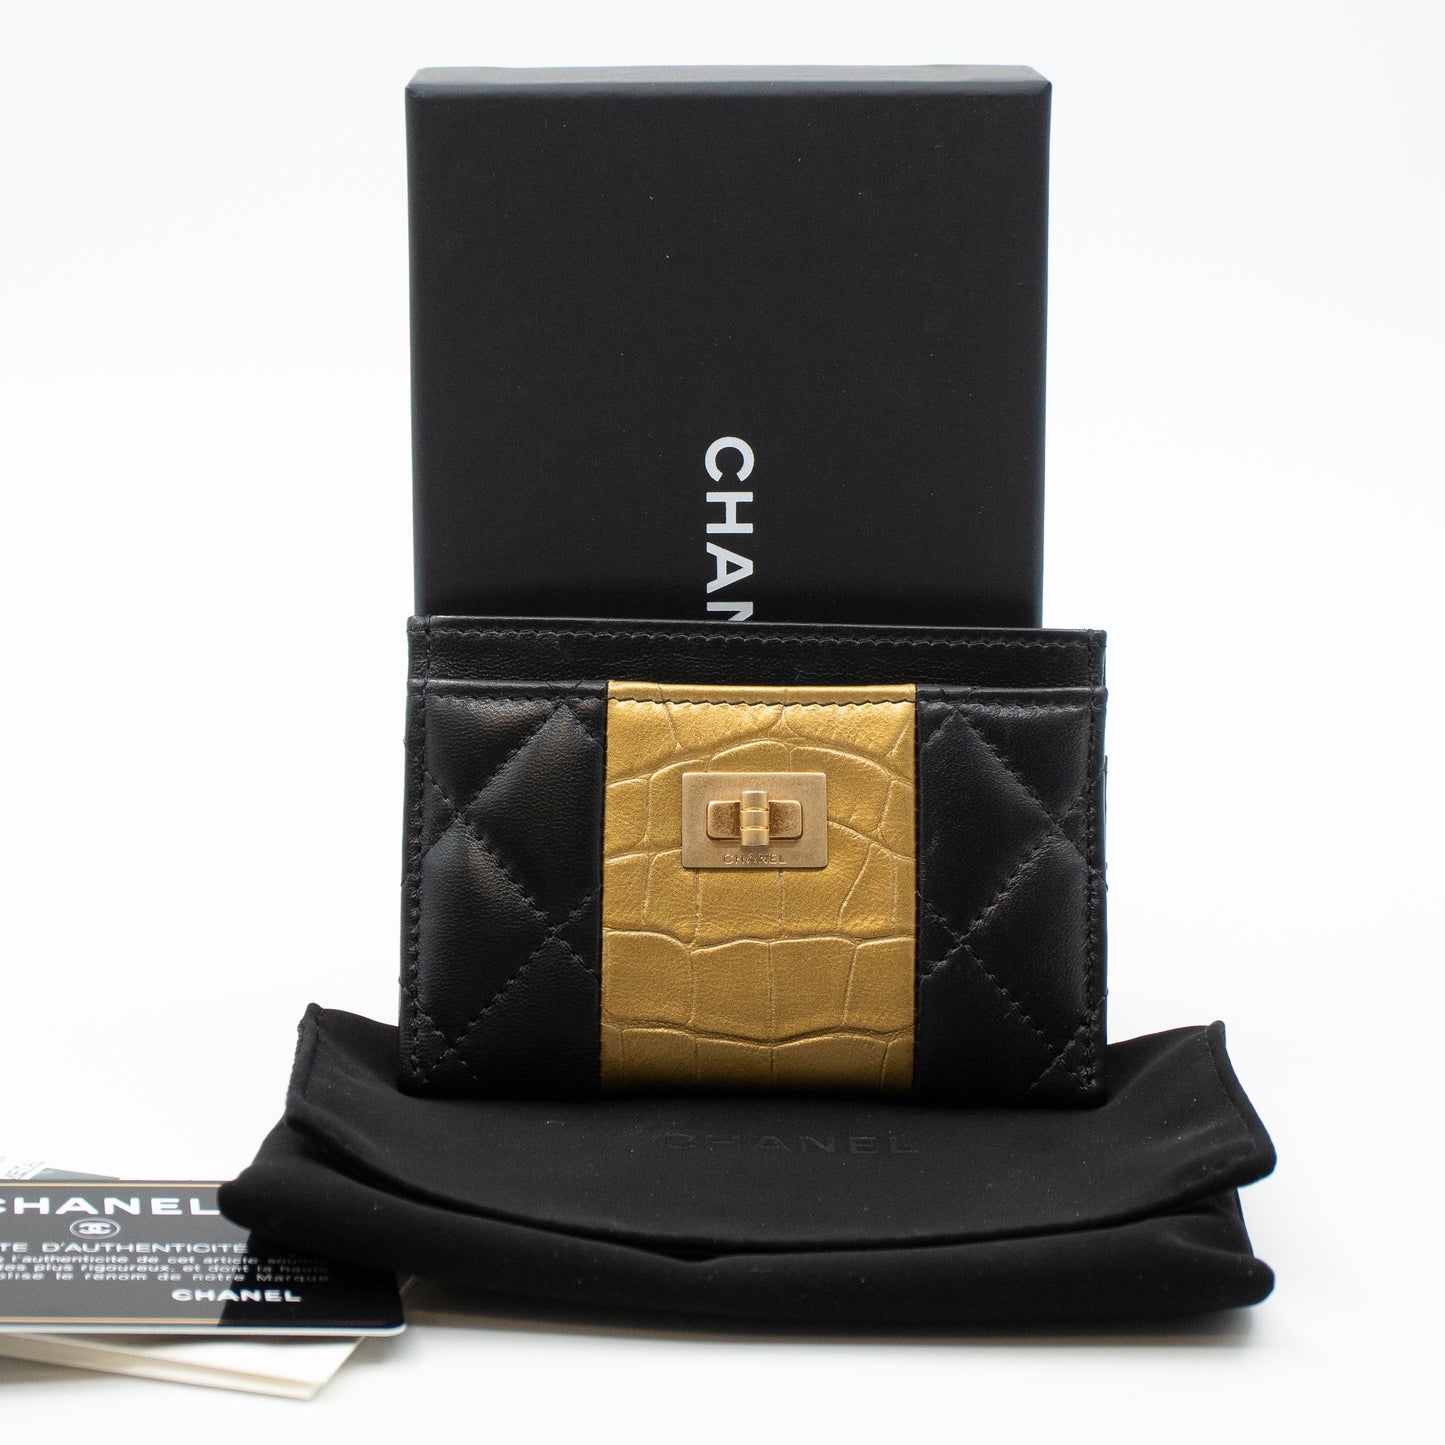 Card Holder Black & Gold Leather